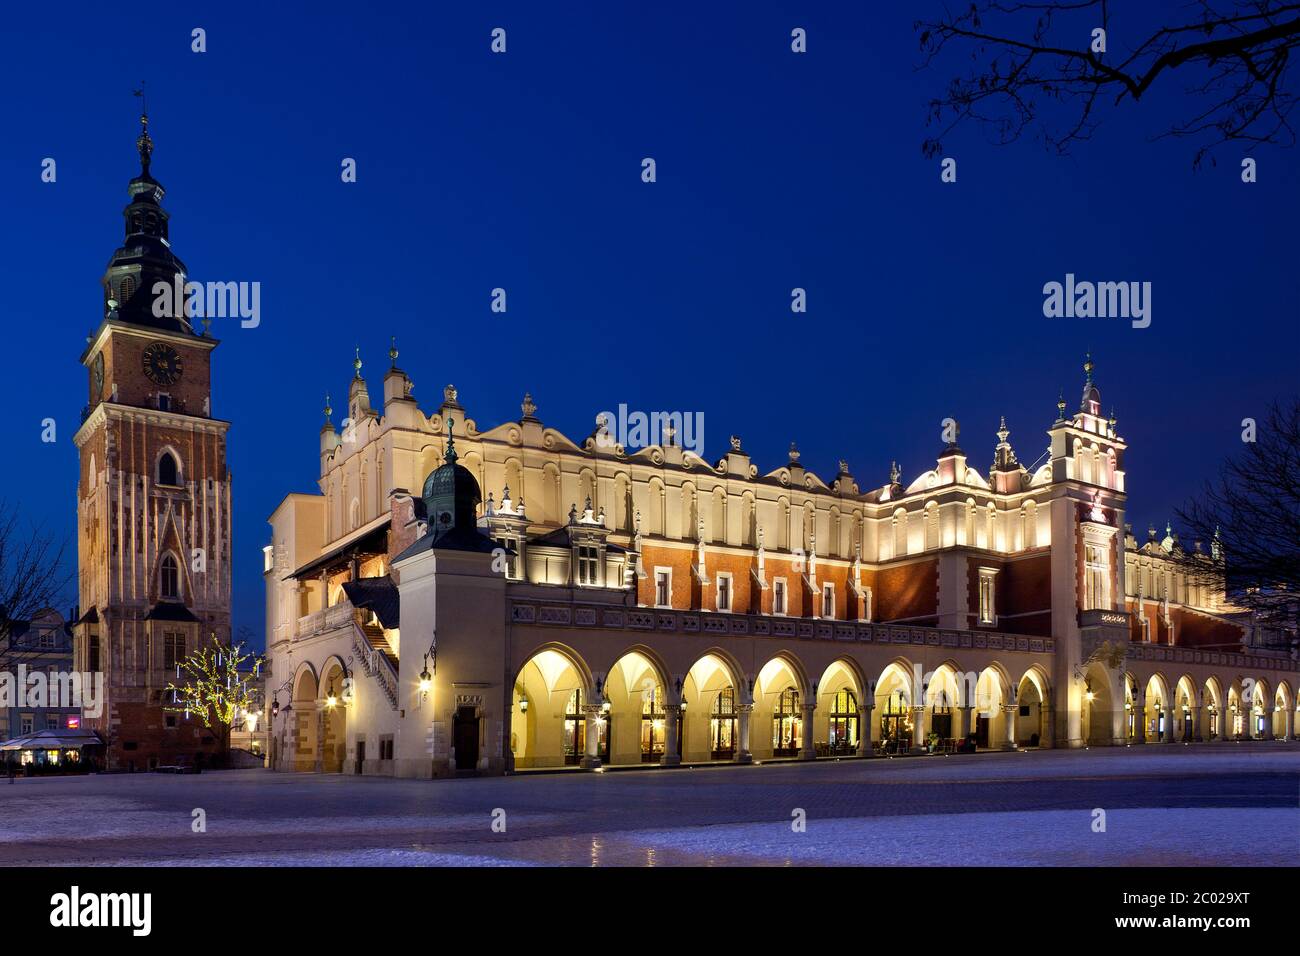 Vista notturna della Torre del Municipio e dell'estremità sud-ovest della Sala dei tessuti nella piazza principale del mercato di Cracovia in Polonia. Foto Stock